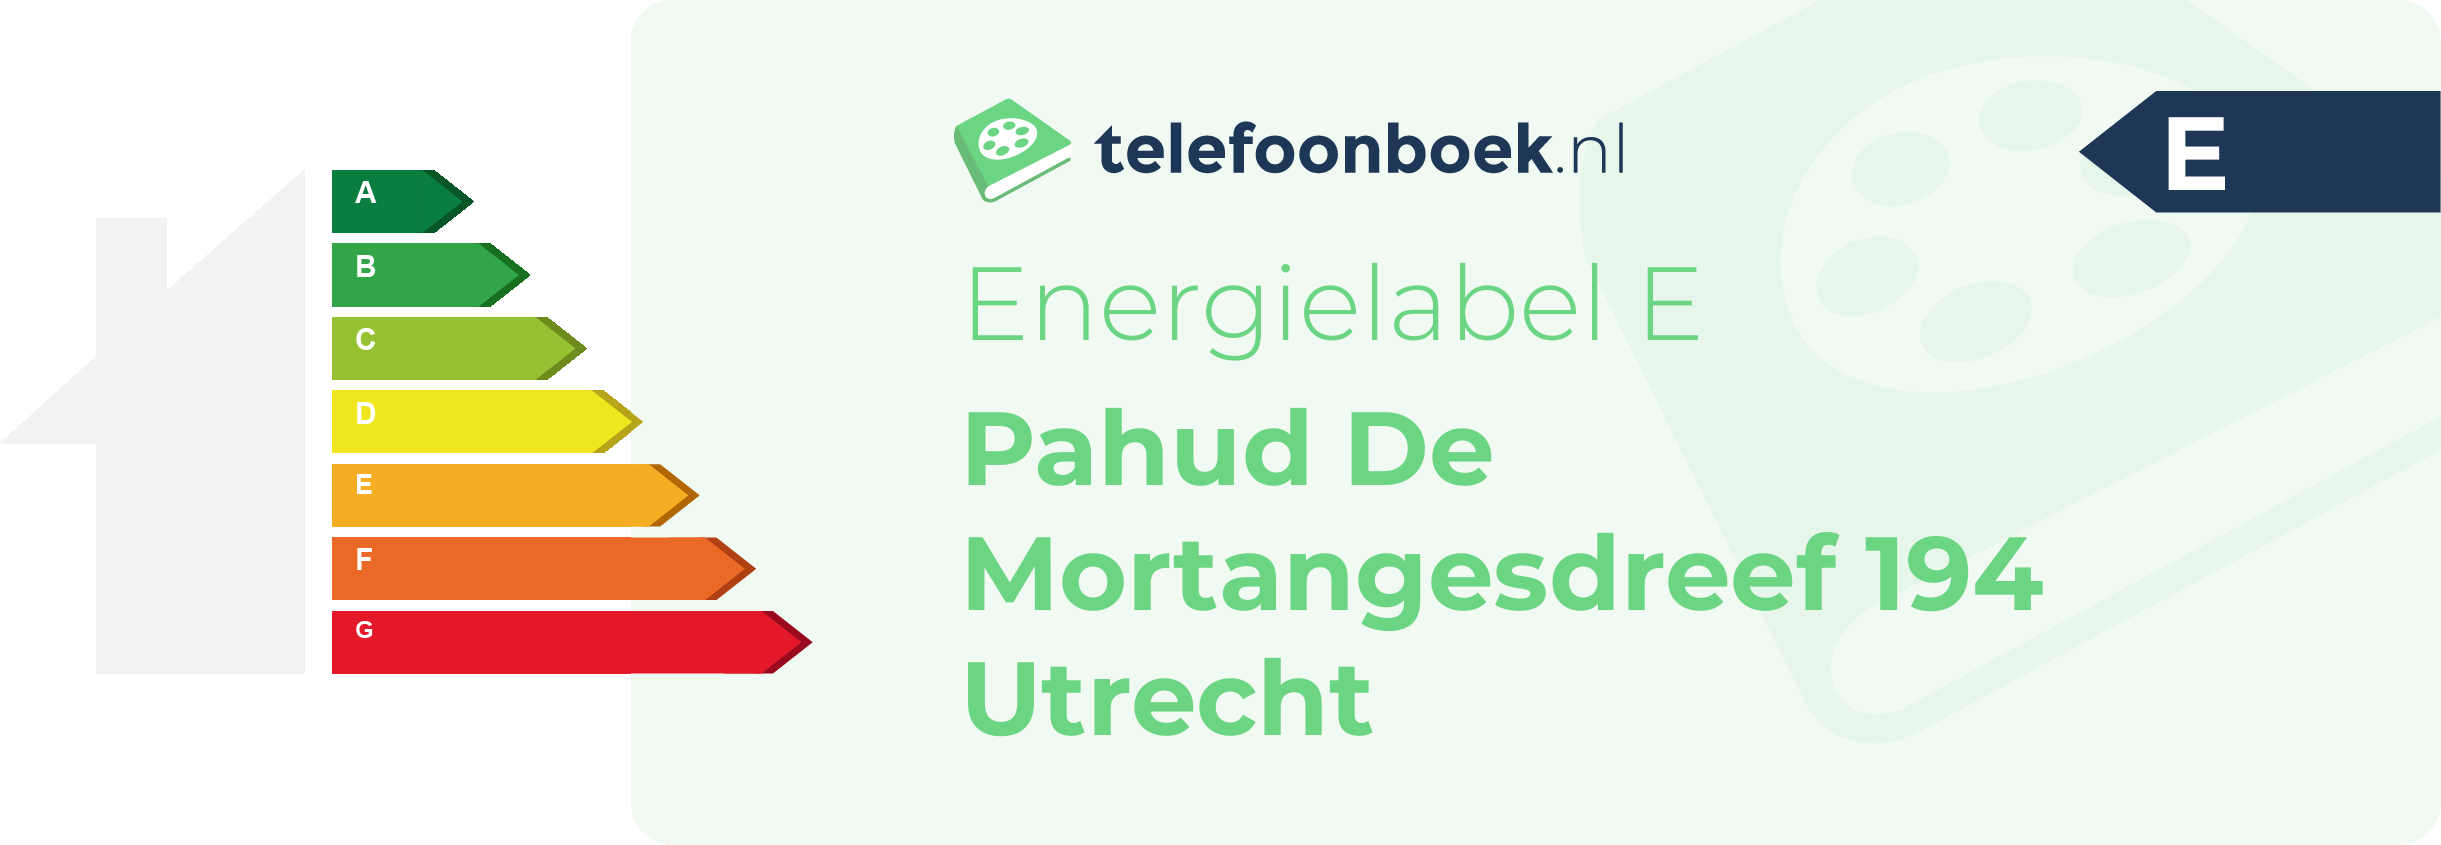 Energielabel Pahud De Mortangesdreef 194 Utrecht